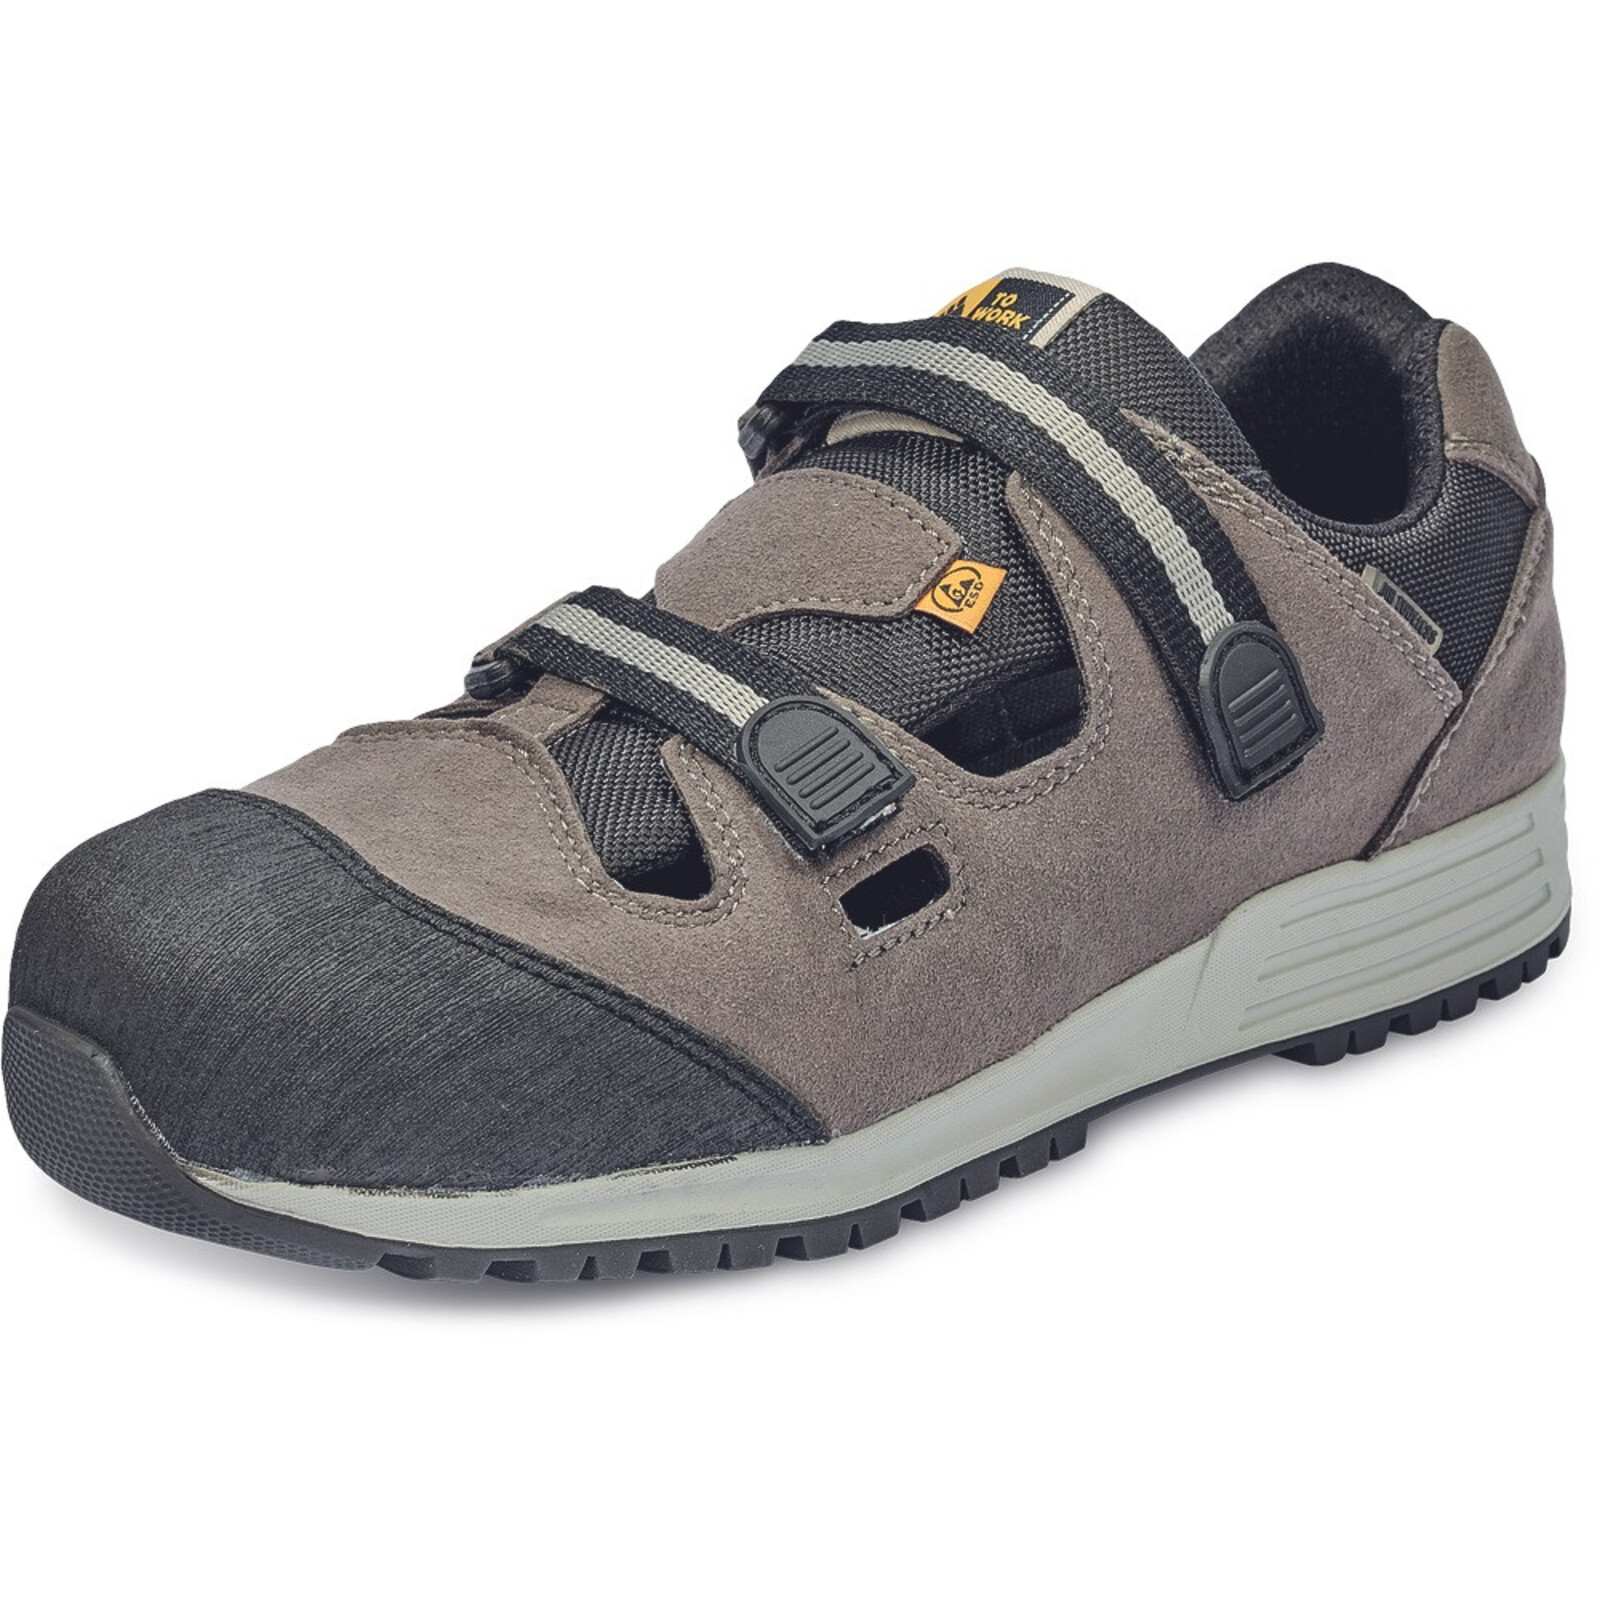 Bezpečnostné sandále To Work For Runner ESD S1P SRC - veľkosť: 44, farba: sivá/čierna